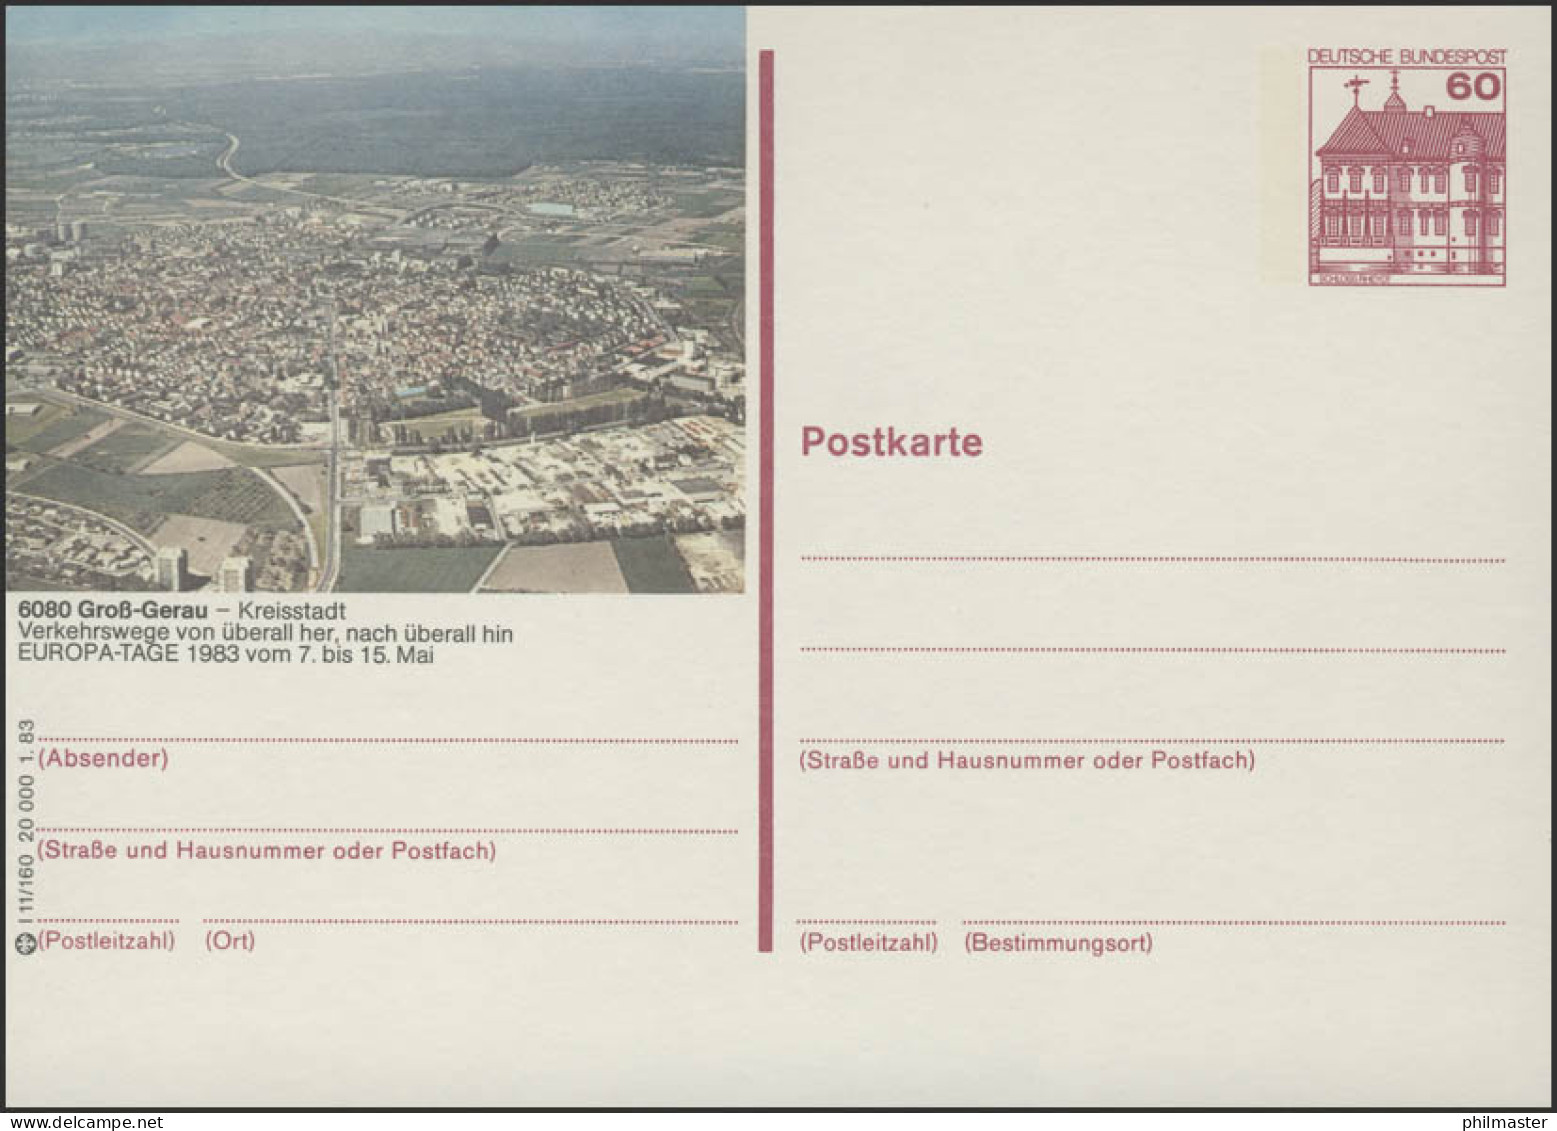 P138-l11/160 6080 Groß-Gerau Luftbild Europatage ** - Illustrated Postcards - Mint